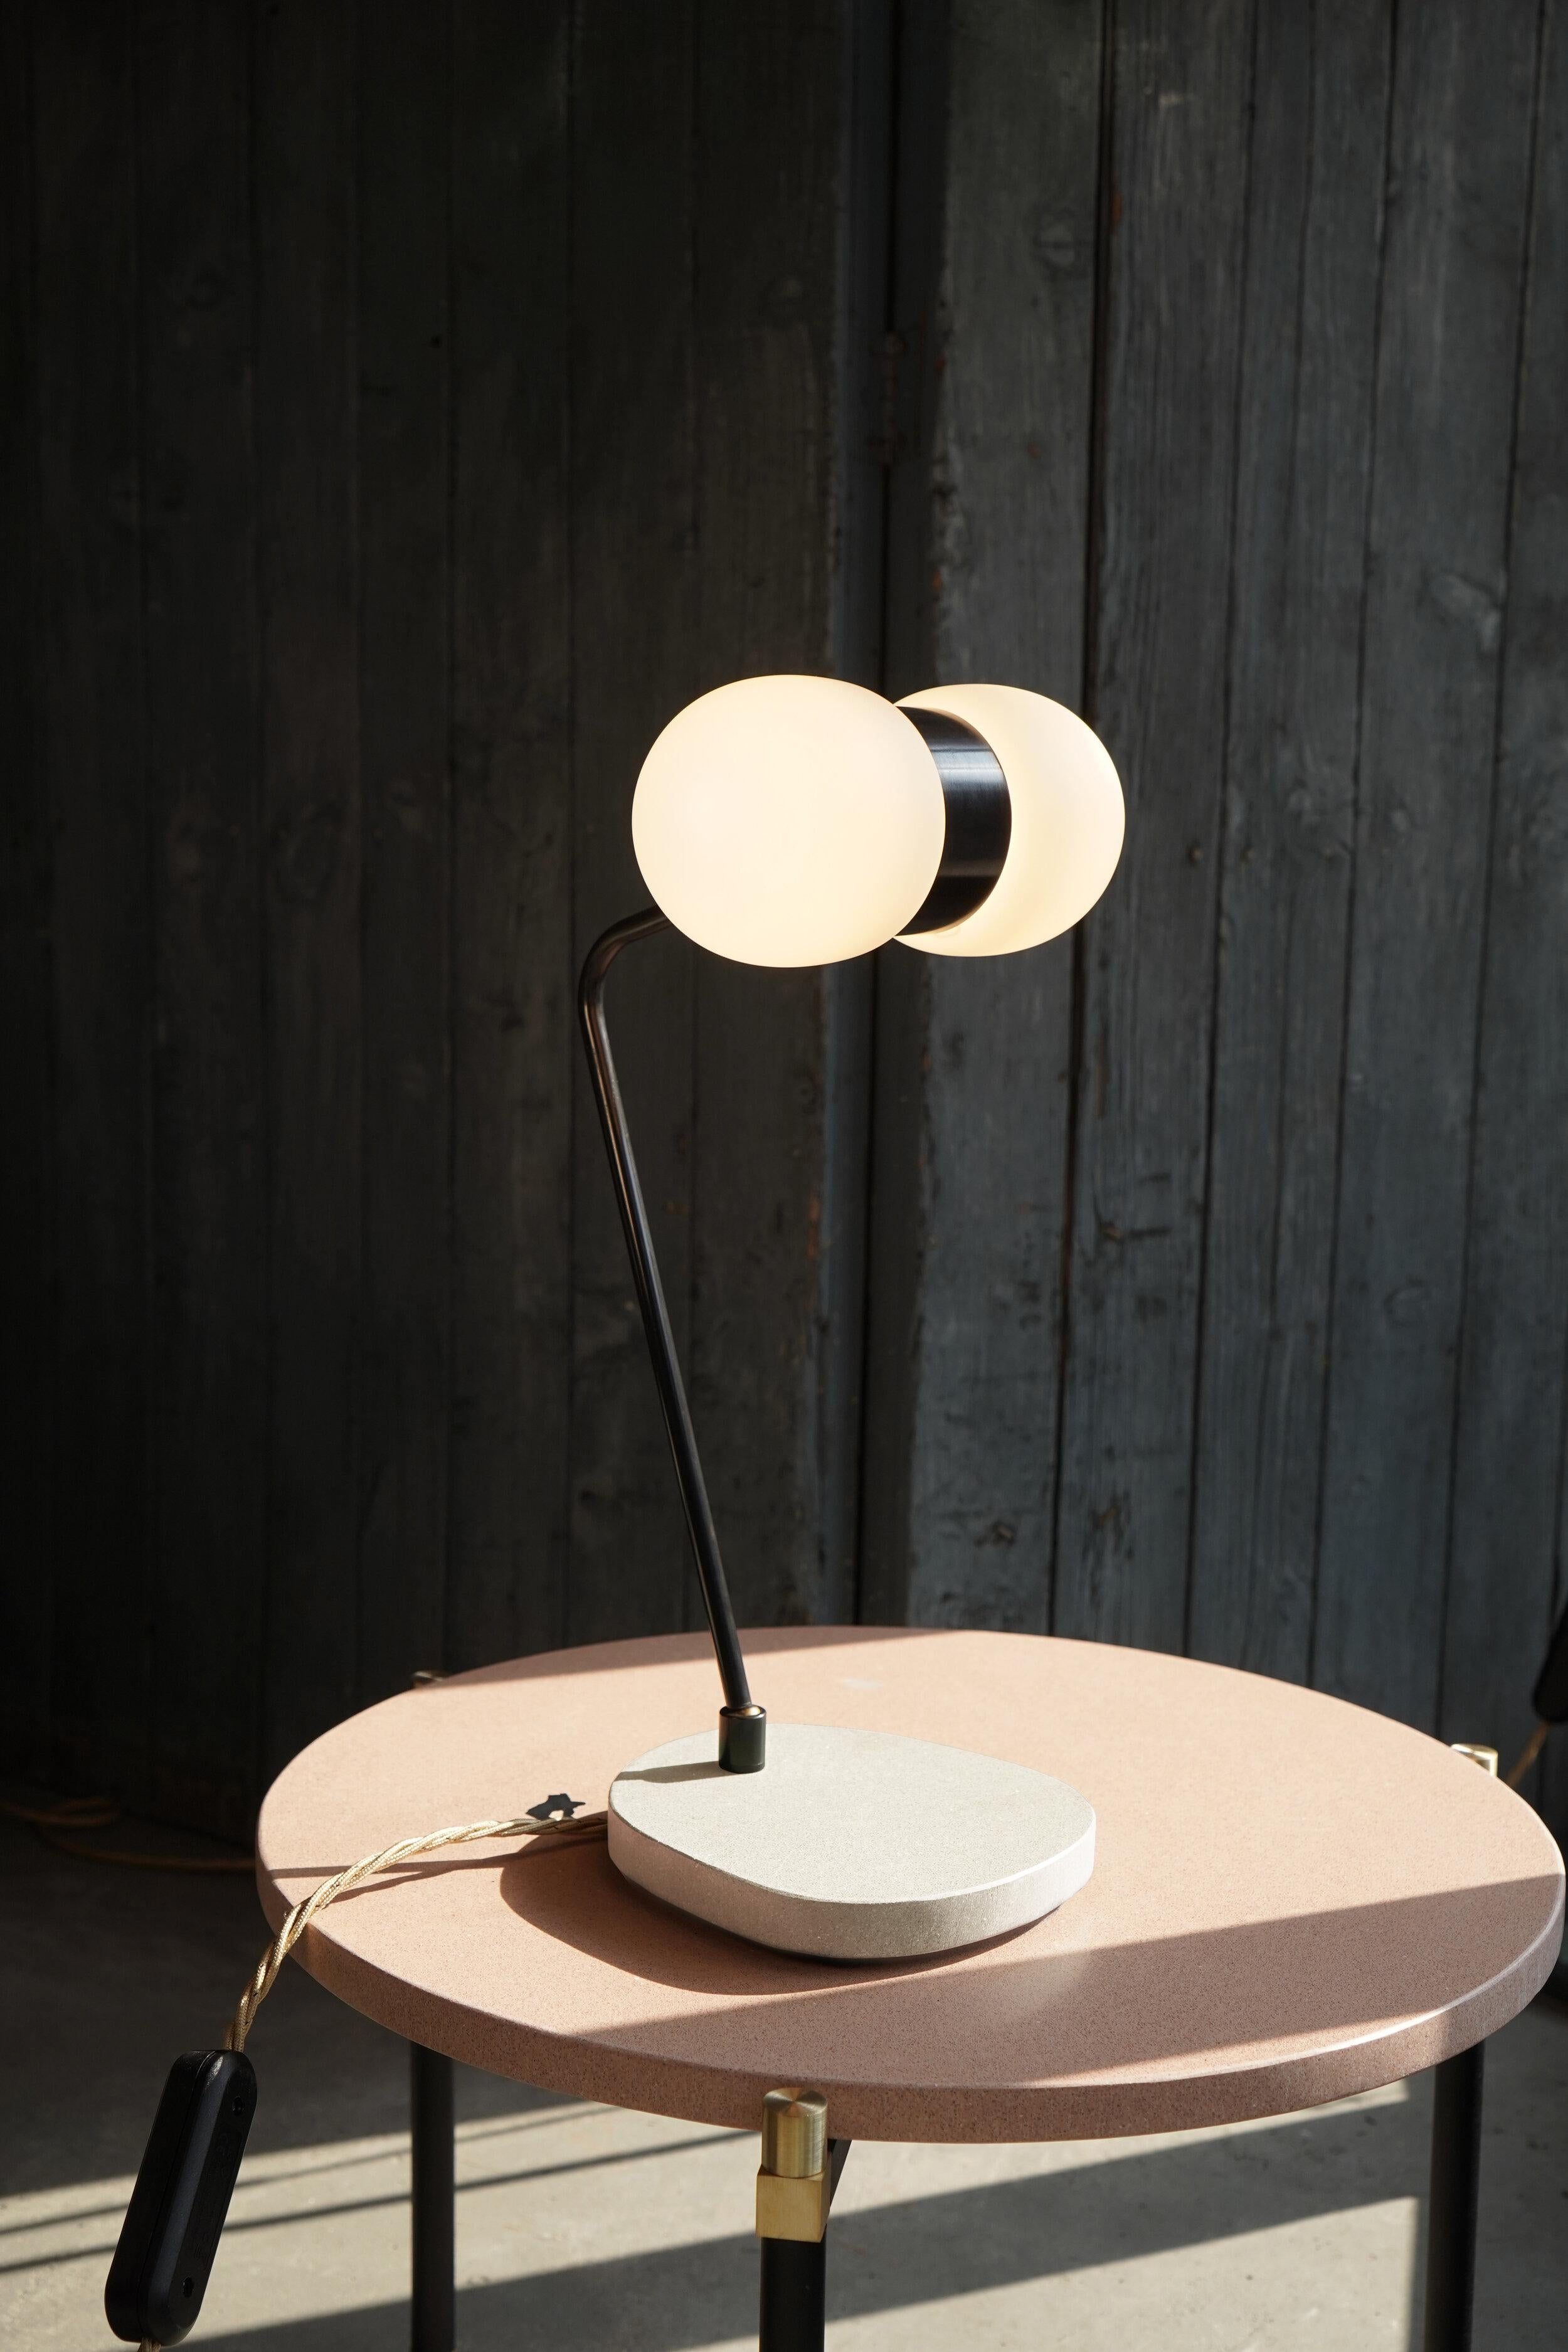 Nuvol Double Table Lamp by Contain
Dimensions : D23 x L39 x H26 cm 
Matériaux : Structure en laiton et verre mat ou brillant.
Disponible en différentes finitions.

Toutes nos lampes peuvent être câblées en fonction de chaque pays. Si elle est vendue